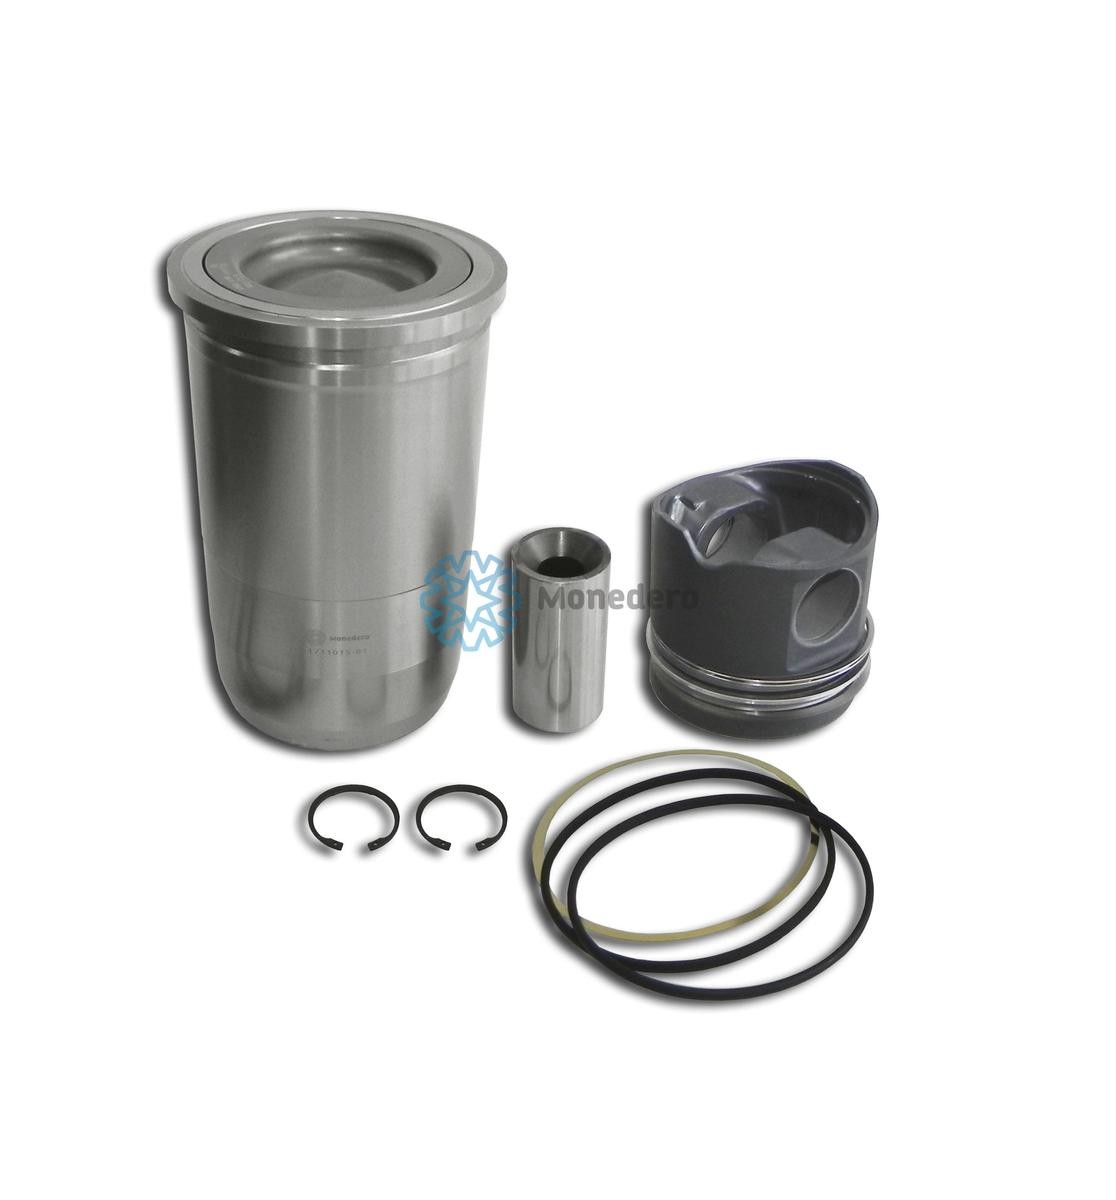 MONEDERO 10011100005 Cylinder Sleeve Kit 89-289600-00